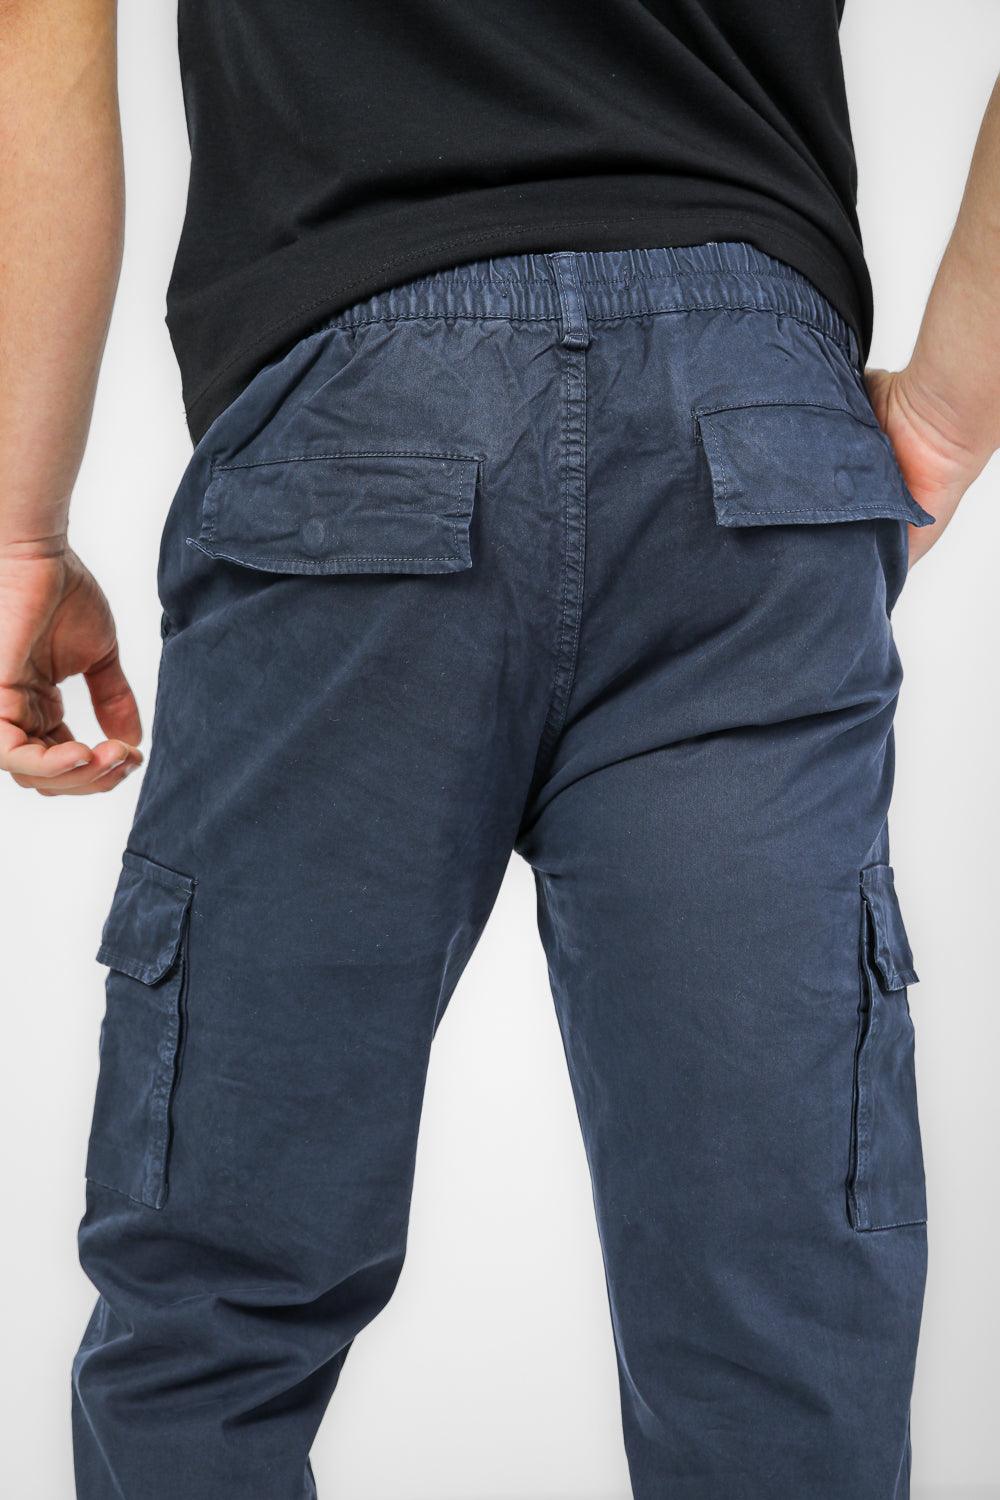 SCORCHER - מכנסי דגמ"ח CLASSIC בצבע נייבי - MASHBIR//365